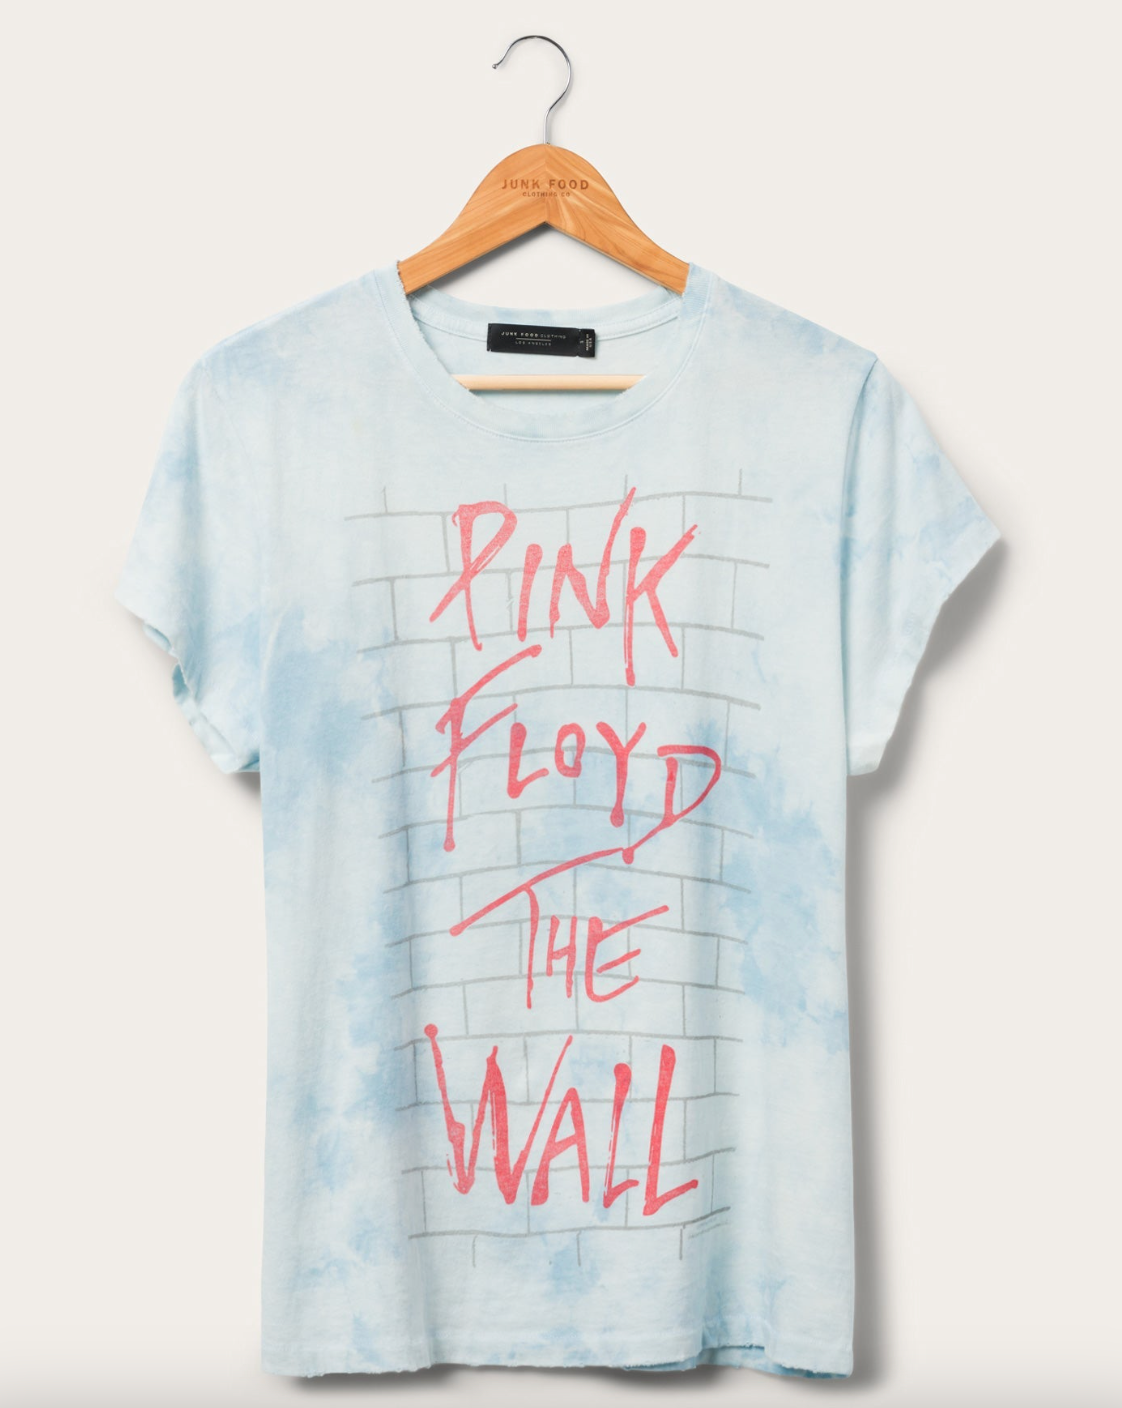 Pink Floyd The Wall Vintage Tee